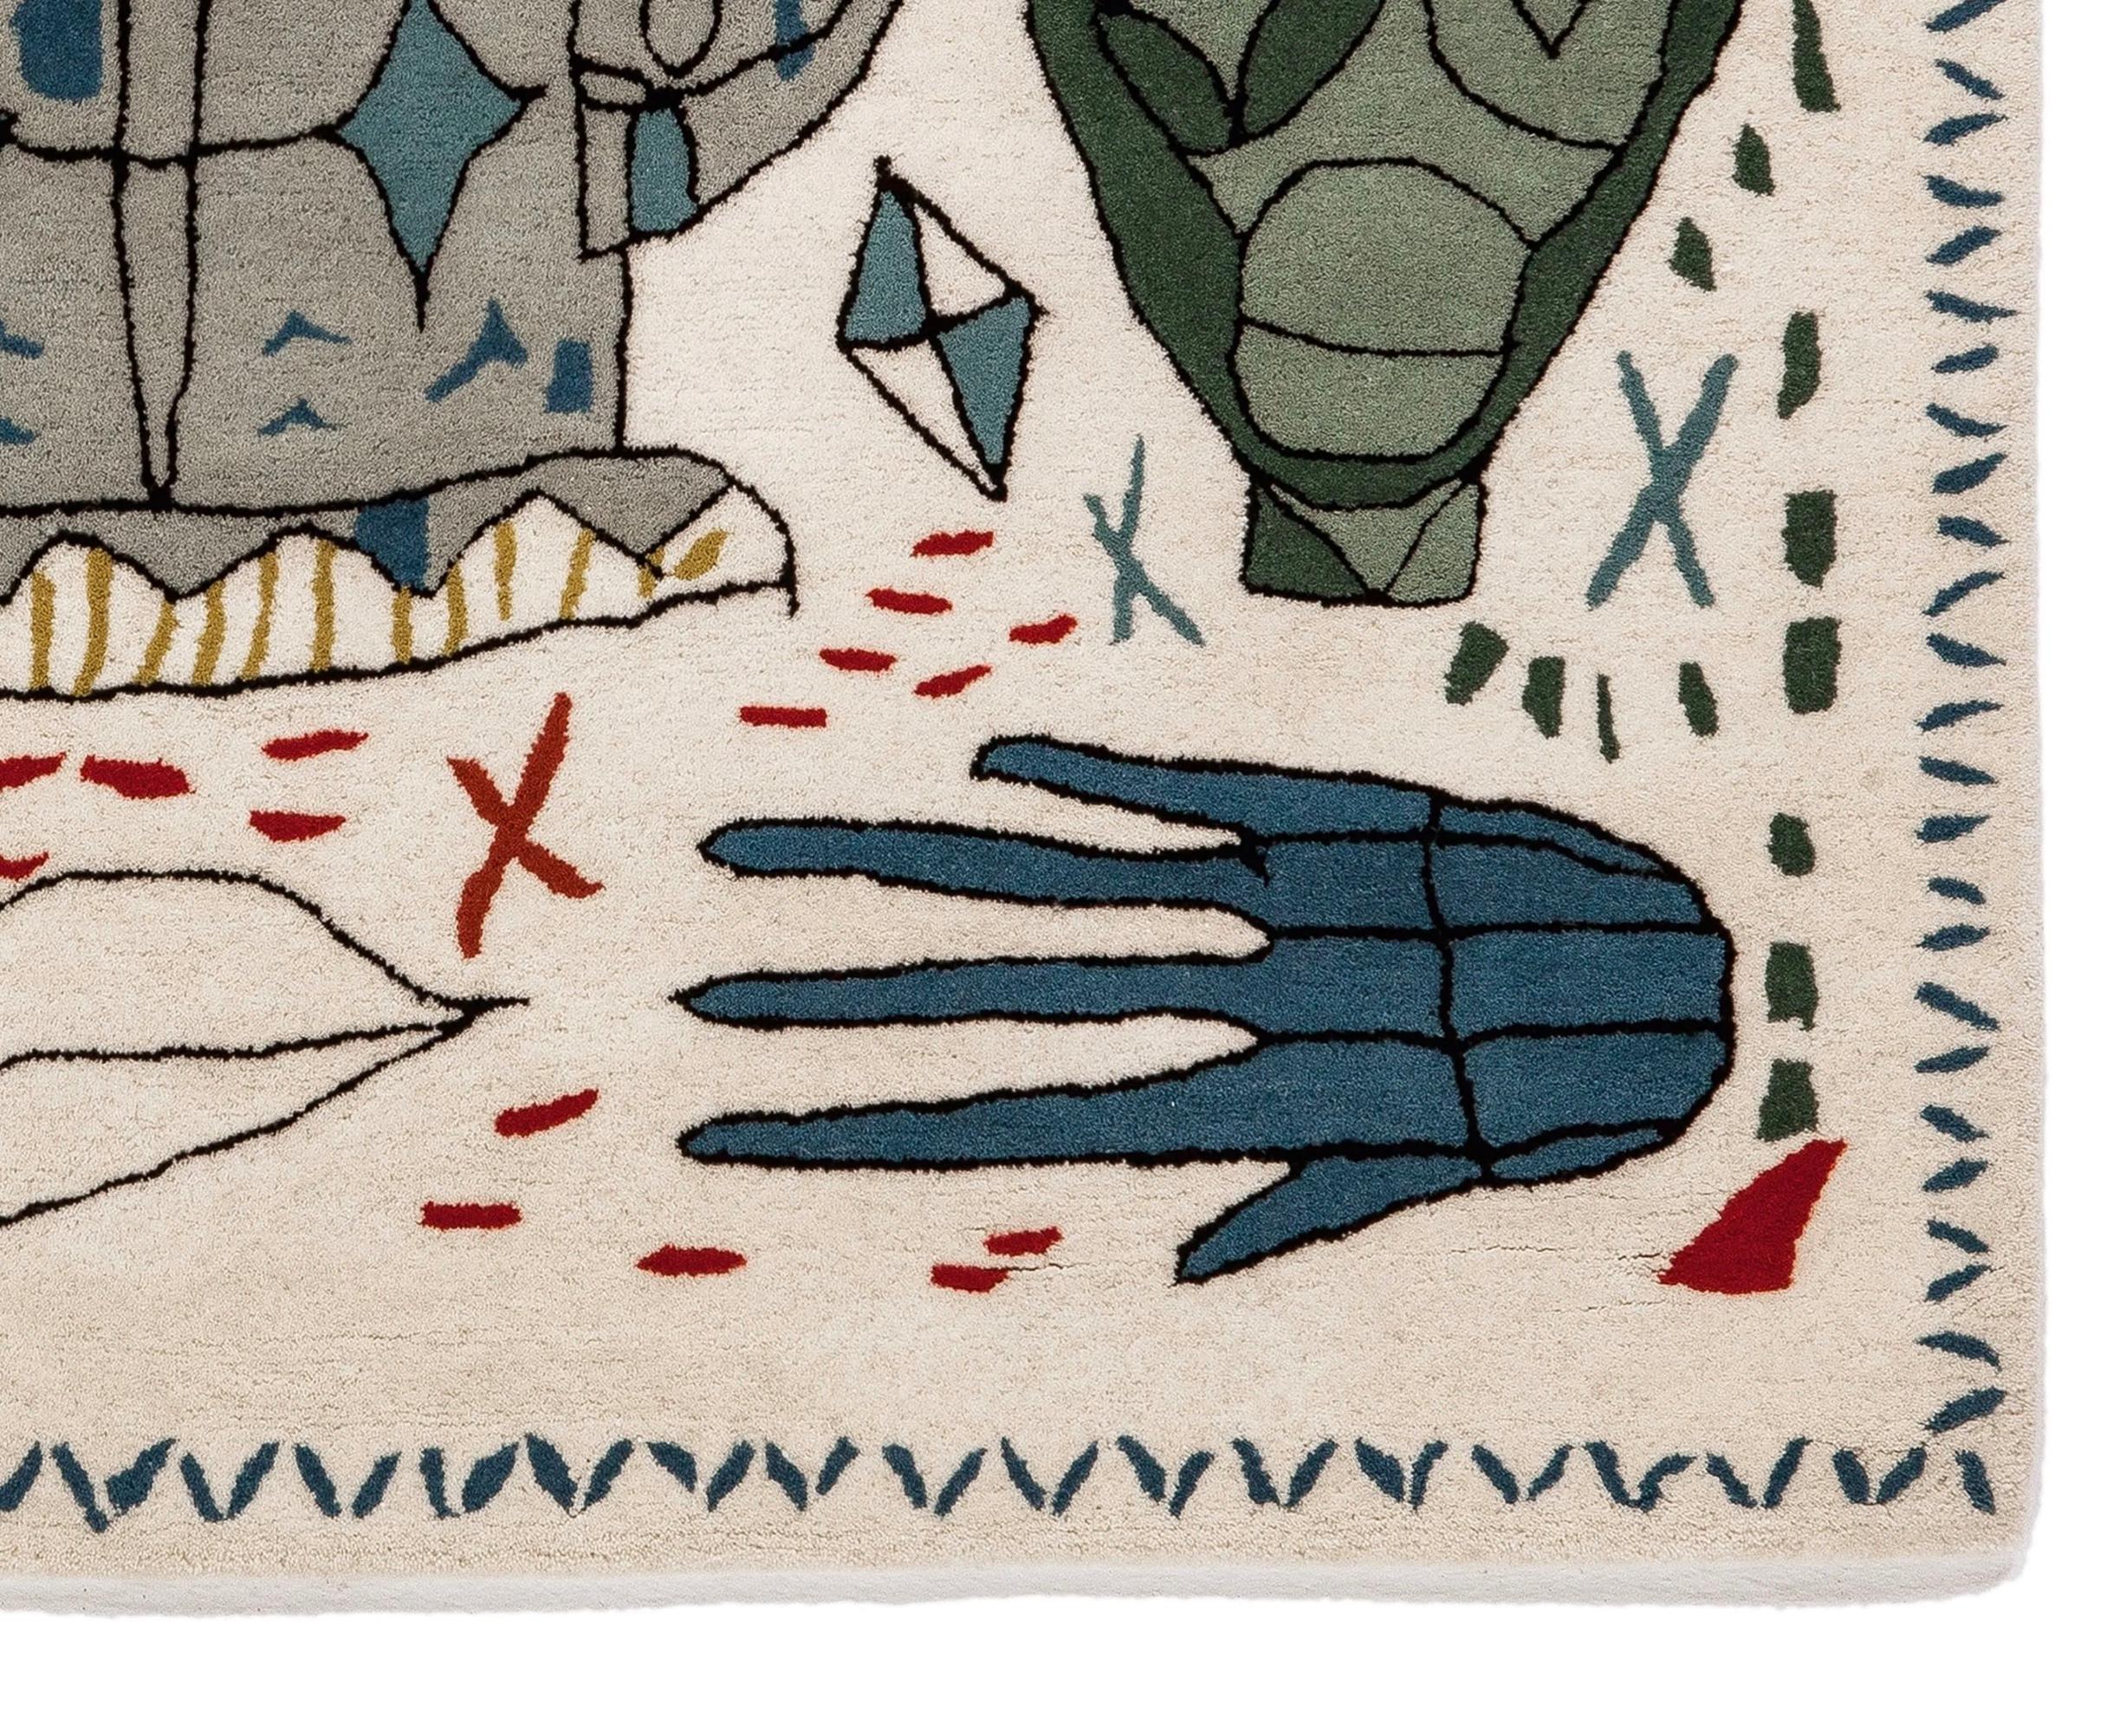 Hand-Crafted Jaime Hayon & Nani Marquina 'Nani x Hayon' Wall Tapestry